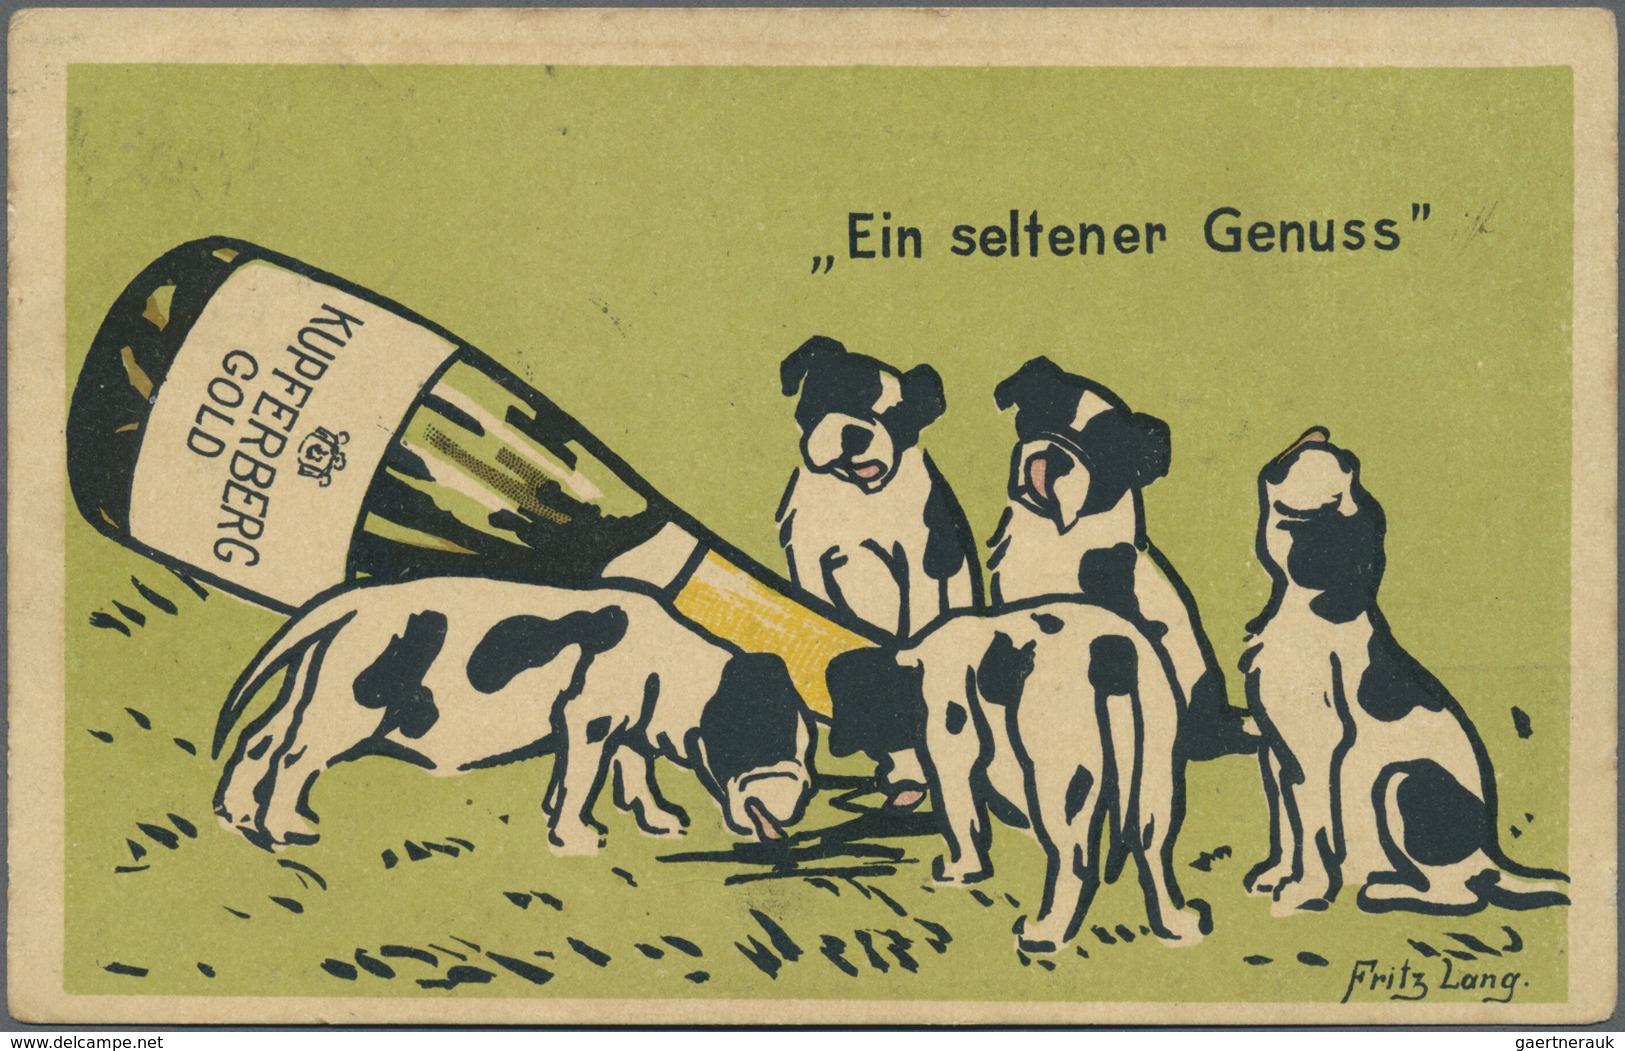 Ansichtskarten: Motive / Thematics: WERBUNG/ALKOHOL: 5 Karten - SEKT 1907 "KUPFERBERG GOLD ein selte